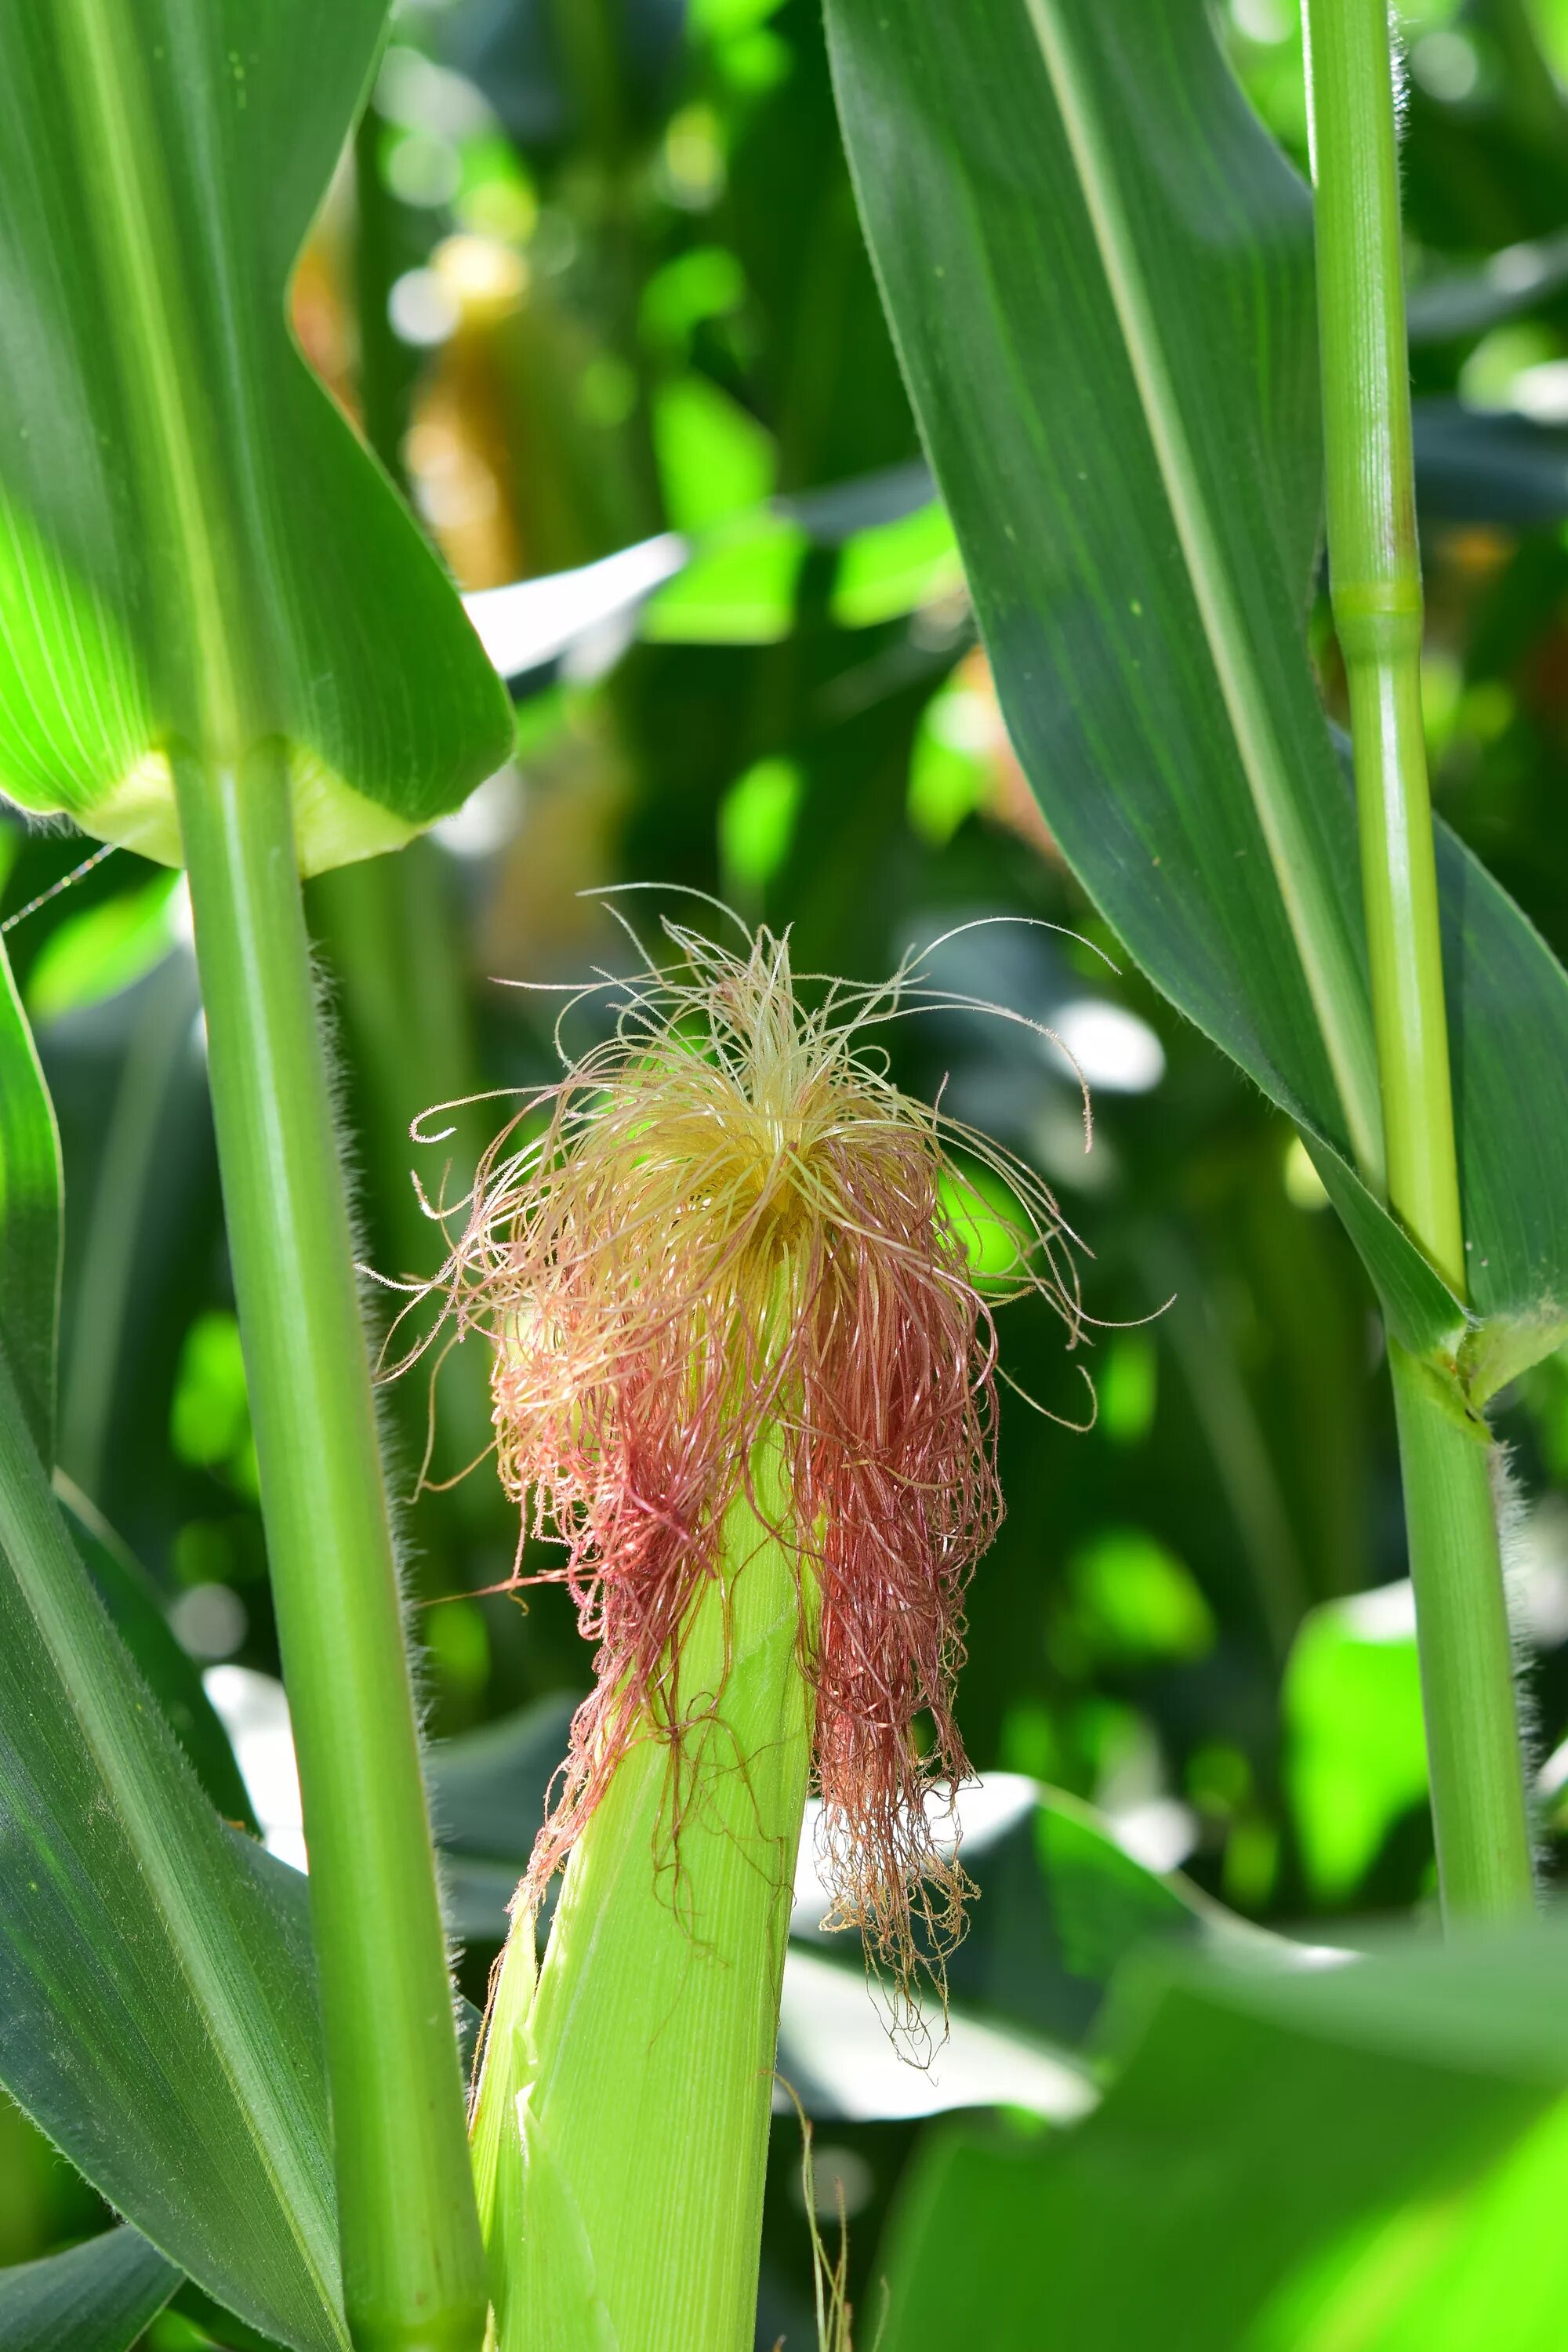 Початок цветок. Кукуруза растение с початками. Кукуруза злаковое растение. Цветение початка кукурузы. Кукуруза это травянистое растение.